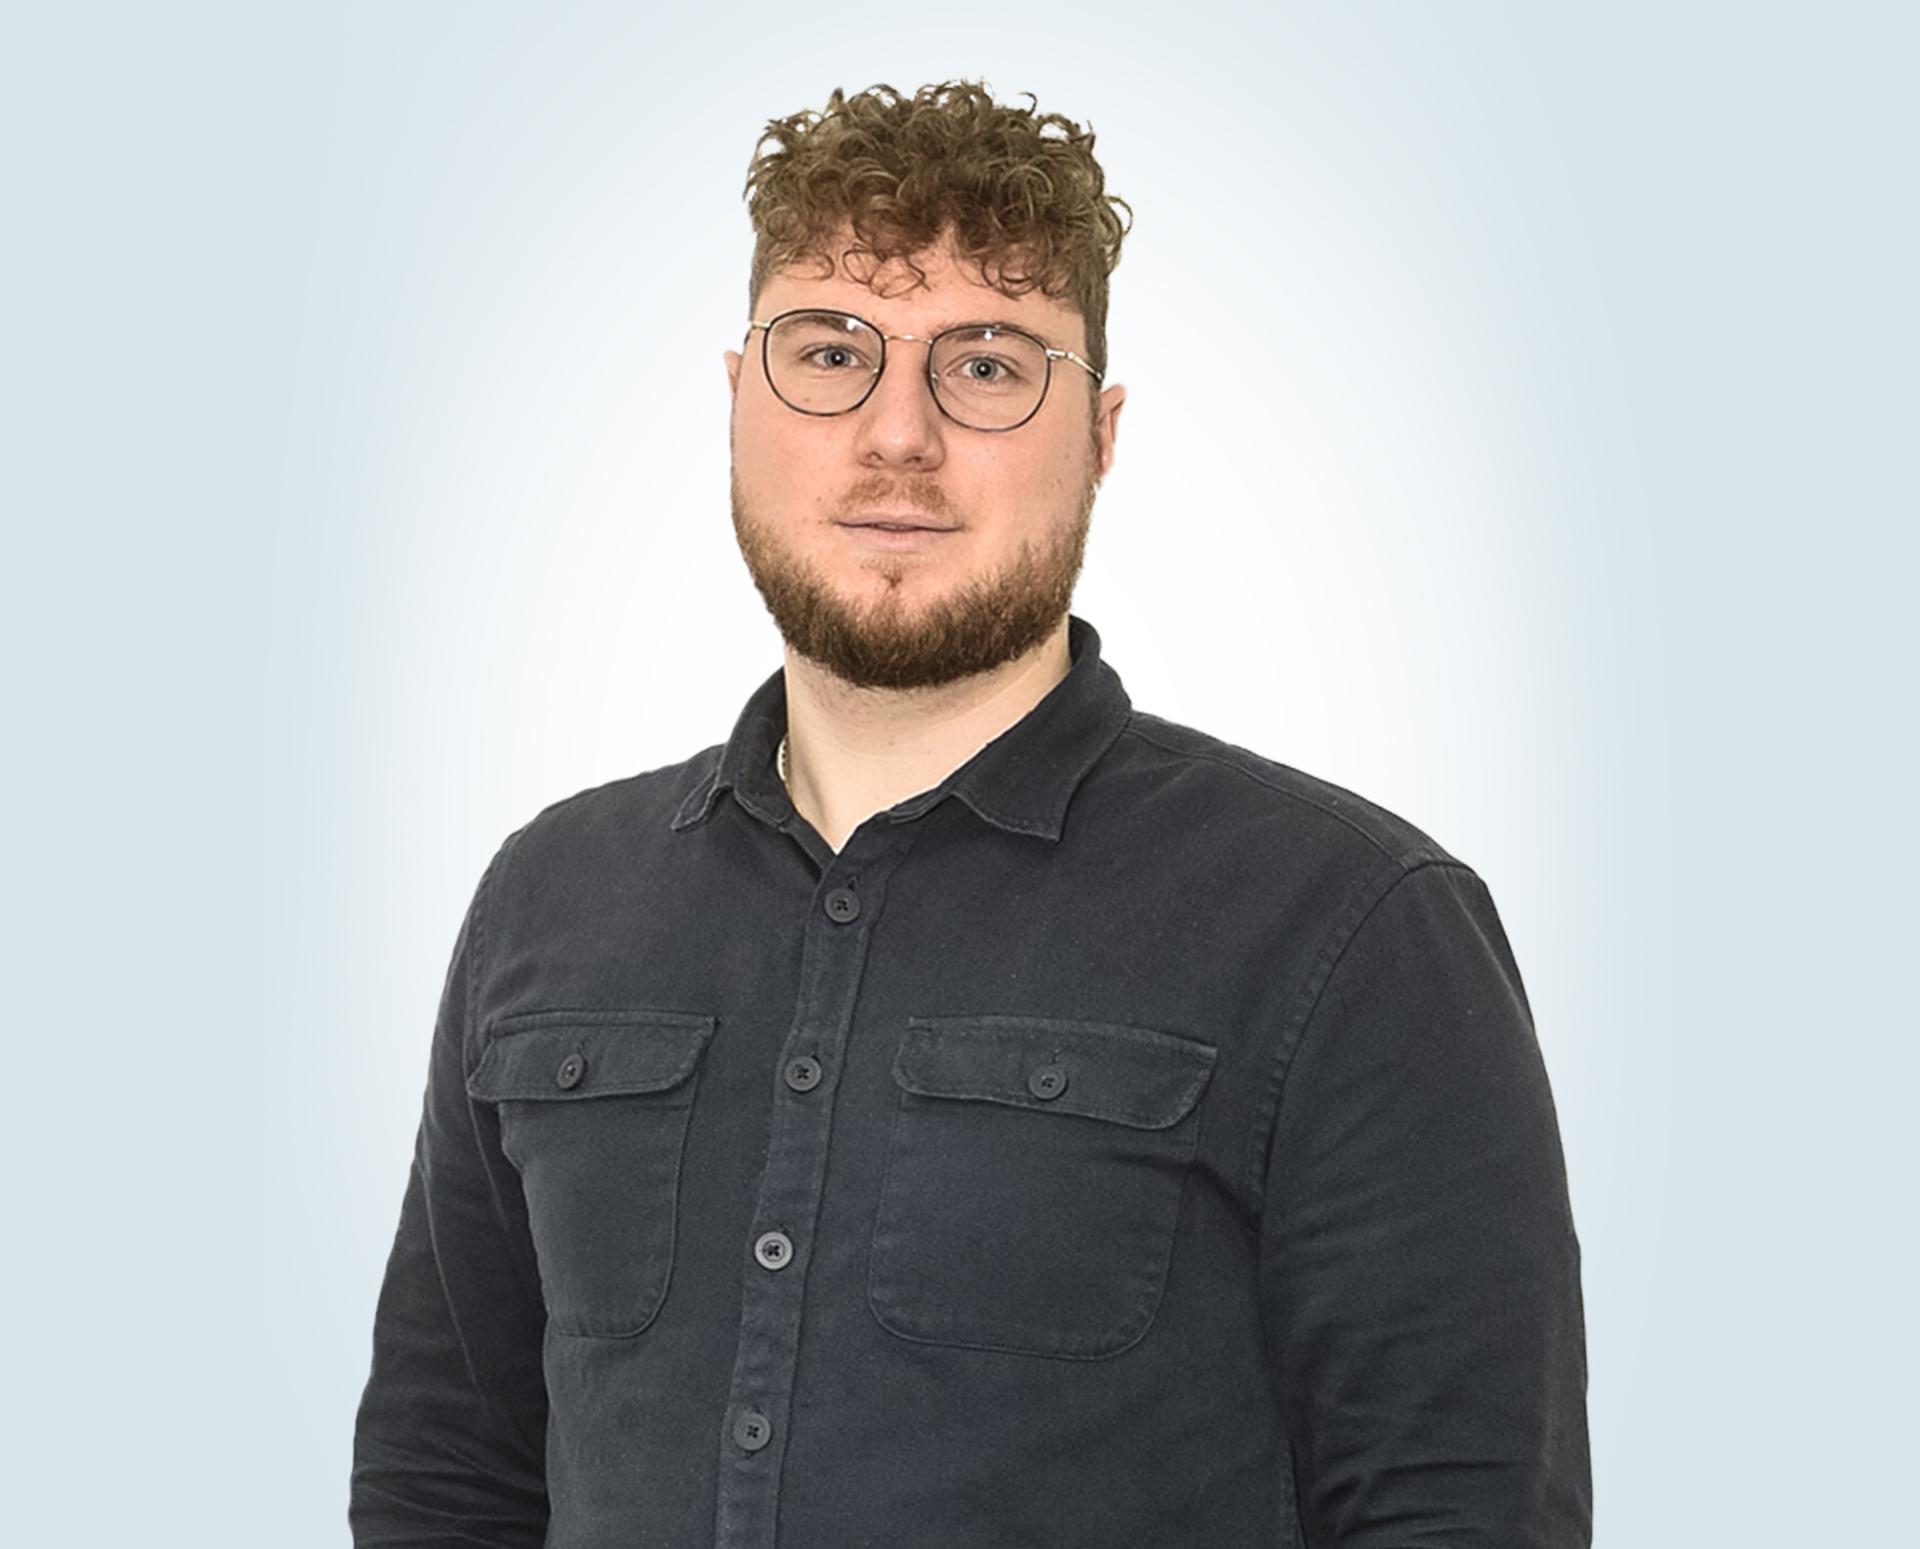 Fabio Esposito - Junior Web-Entwickler bei Quellwerke GmbH